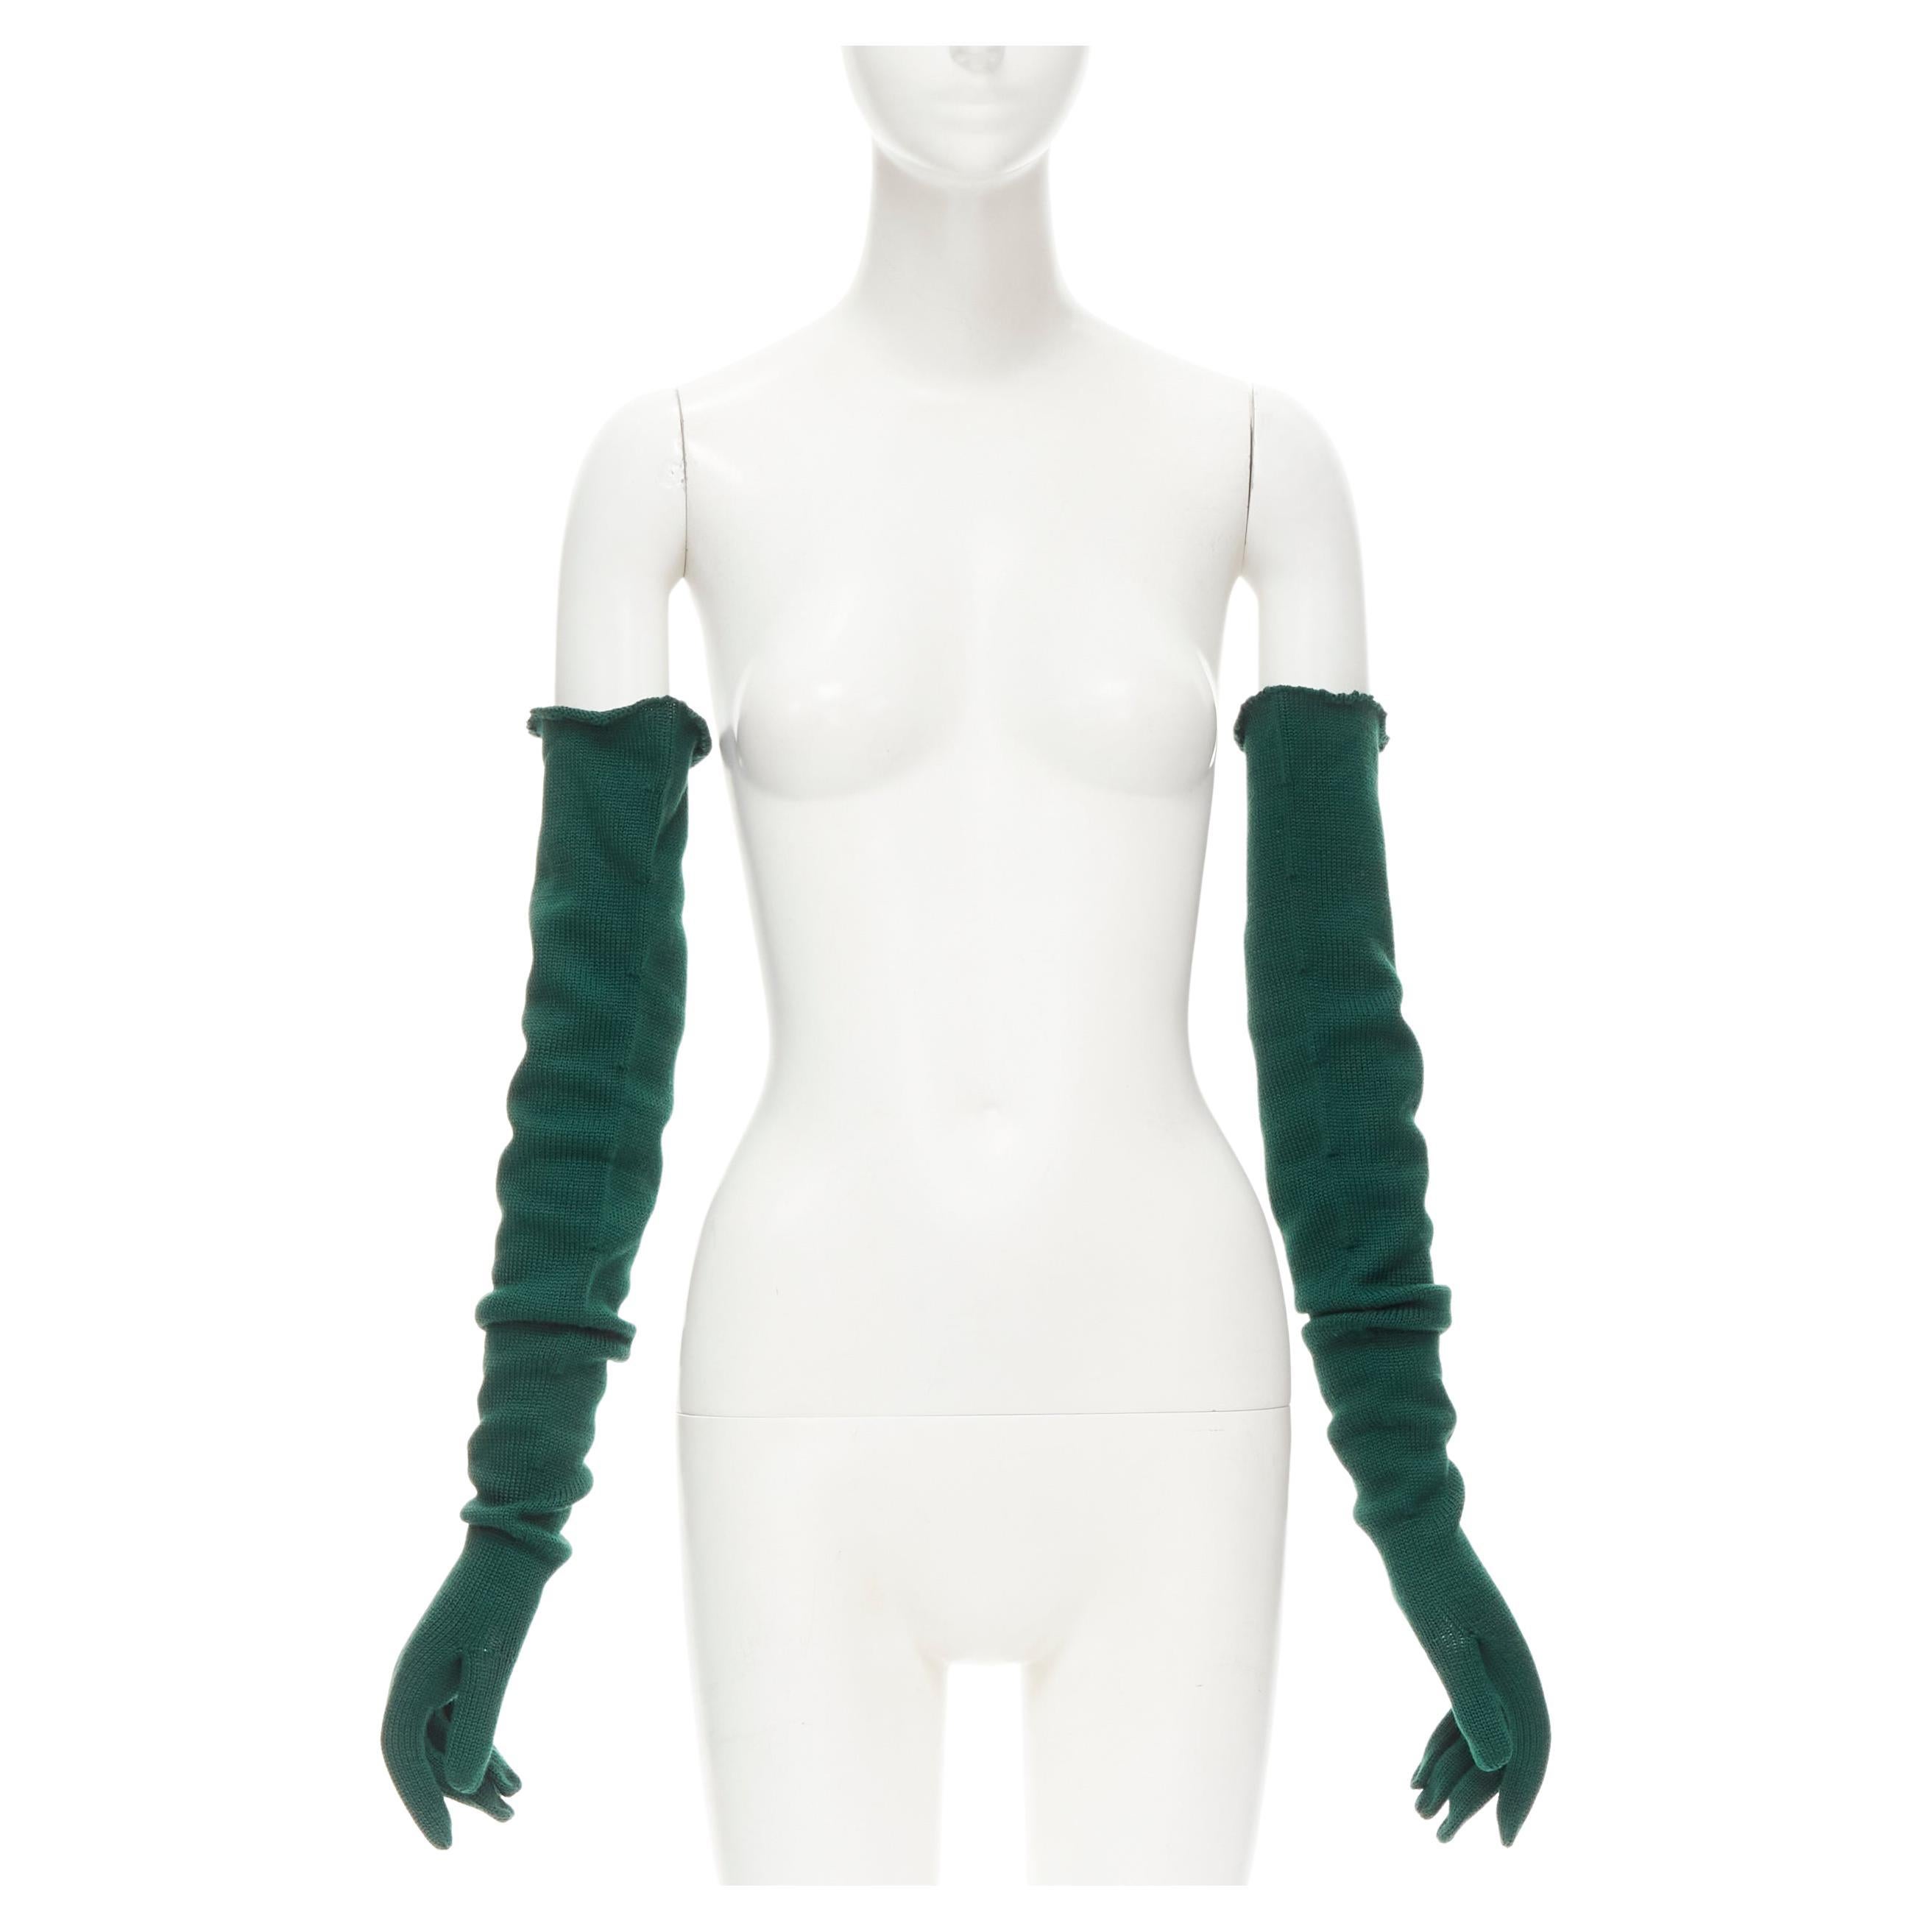 COMME DES GARCONS 1996 Vintage Laufsteg-Handschuhe aus grüner Wolle in Opernform, selten